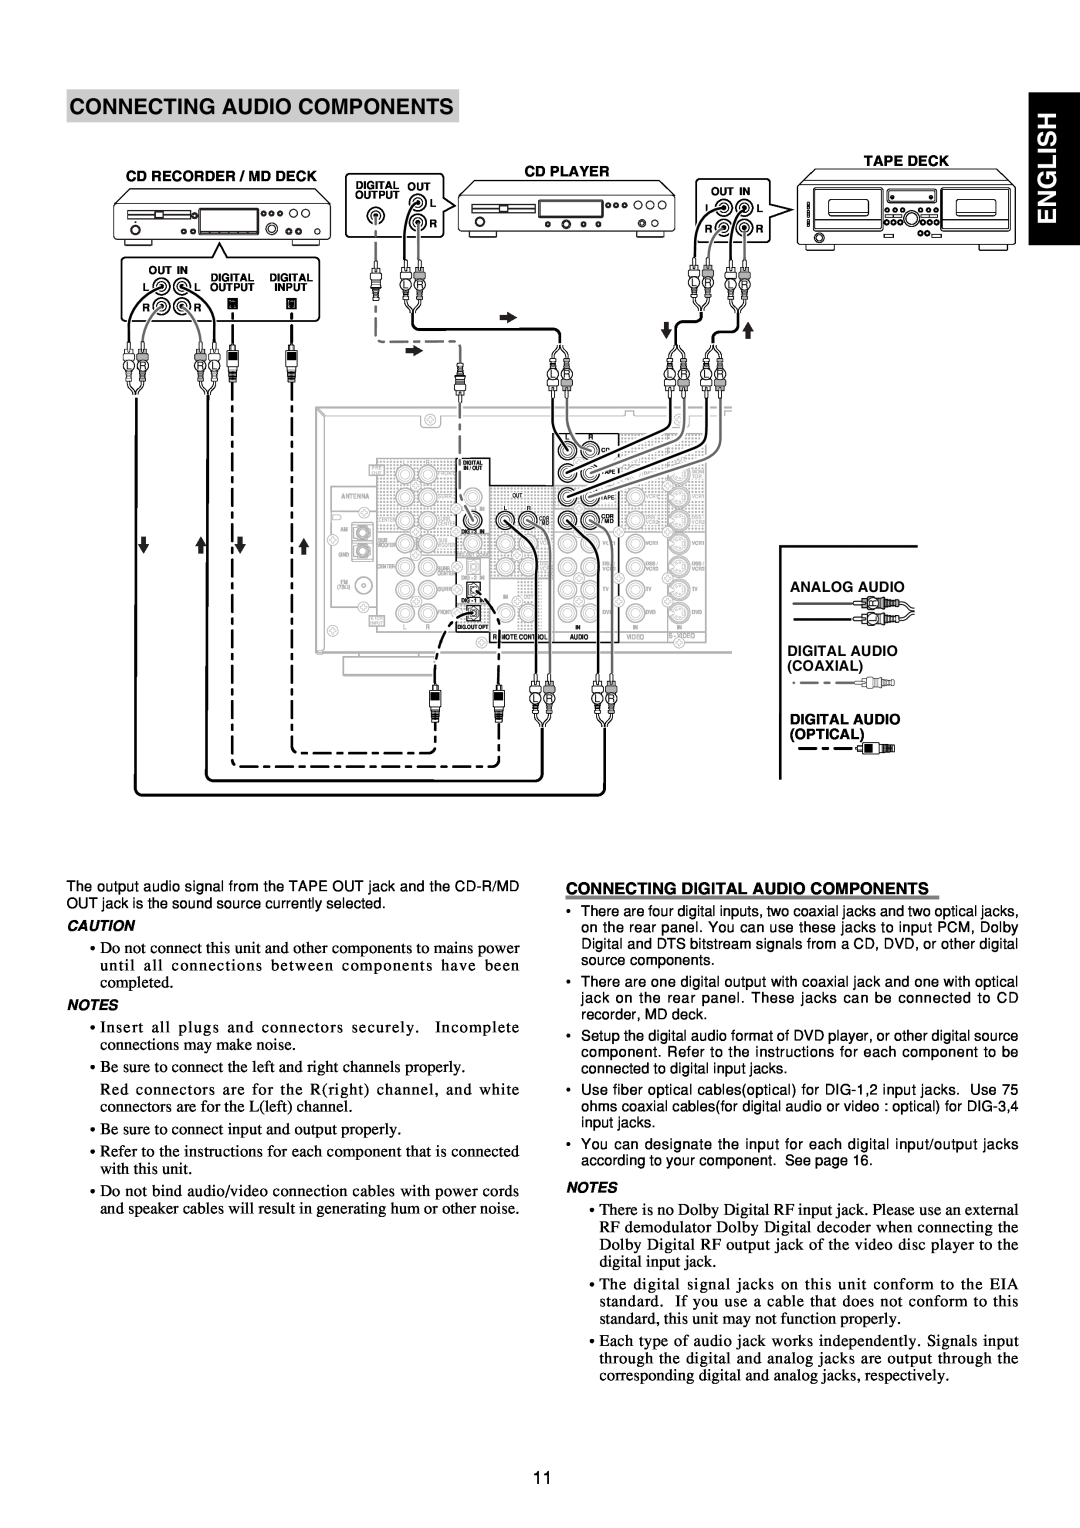 Marantz SR5300 manual English, Connecting Audio Components, Connecting Digital Audio Components 